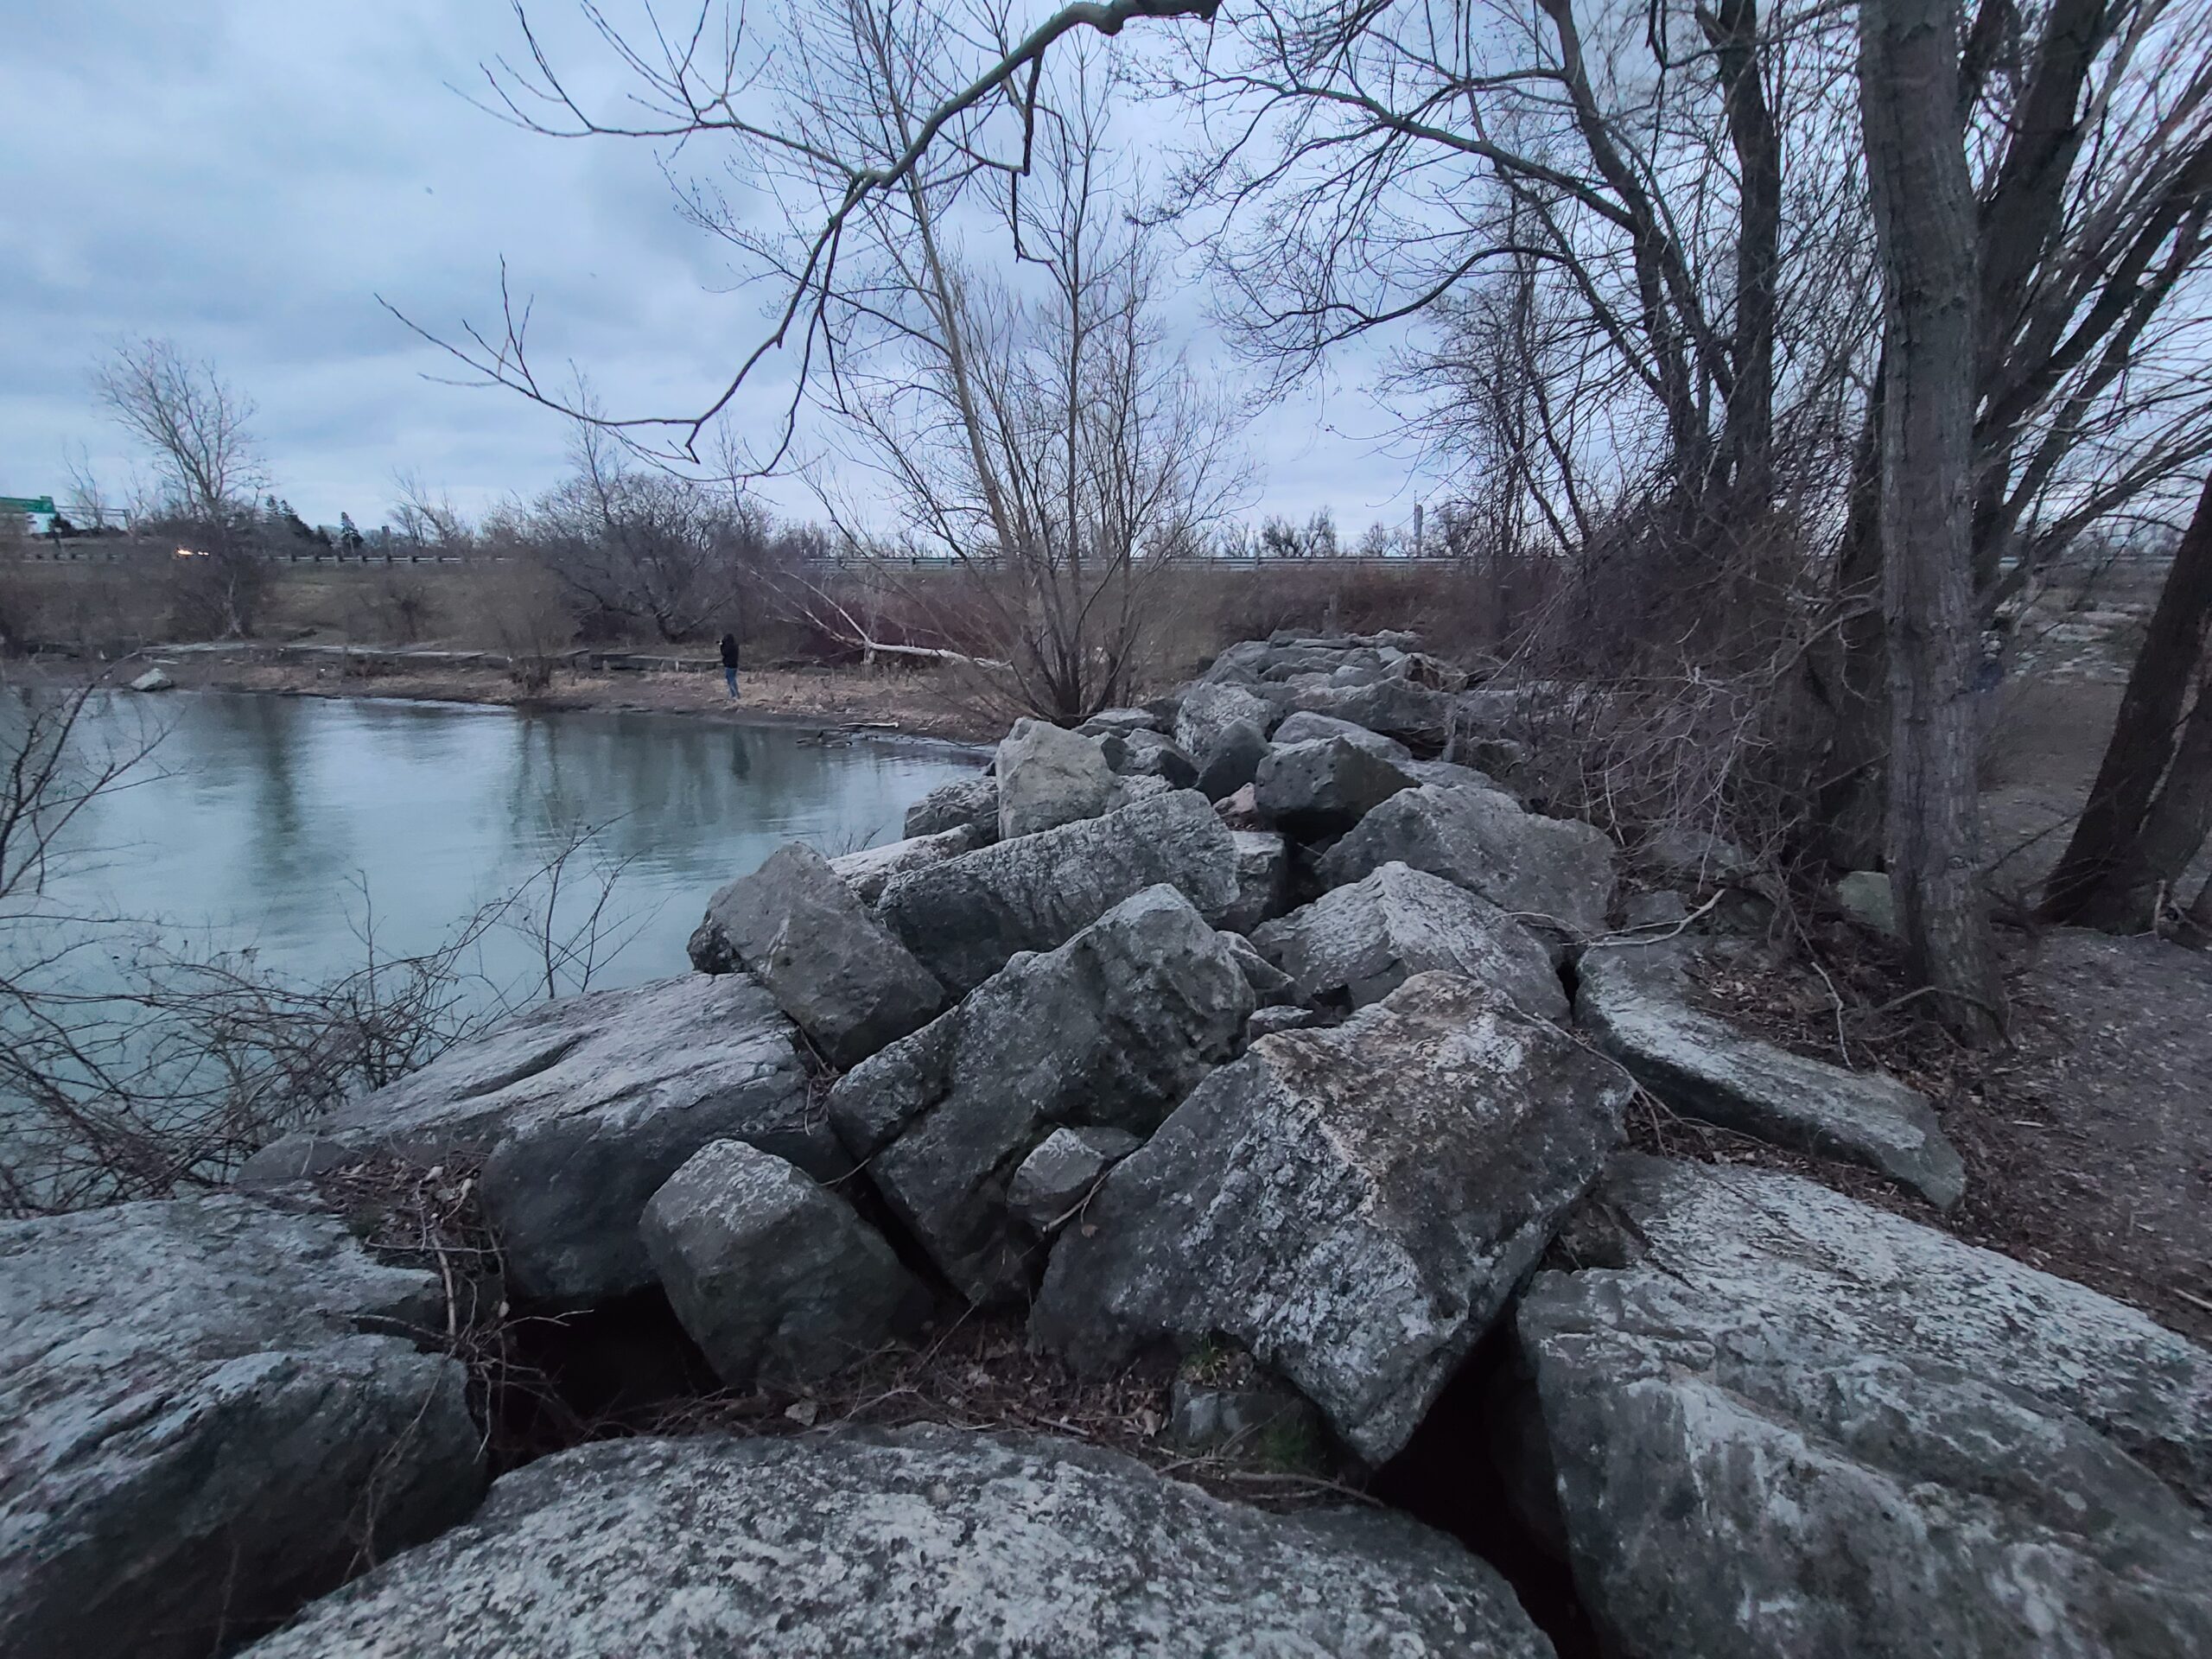 Lakeside rocks along Lake Ontario.